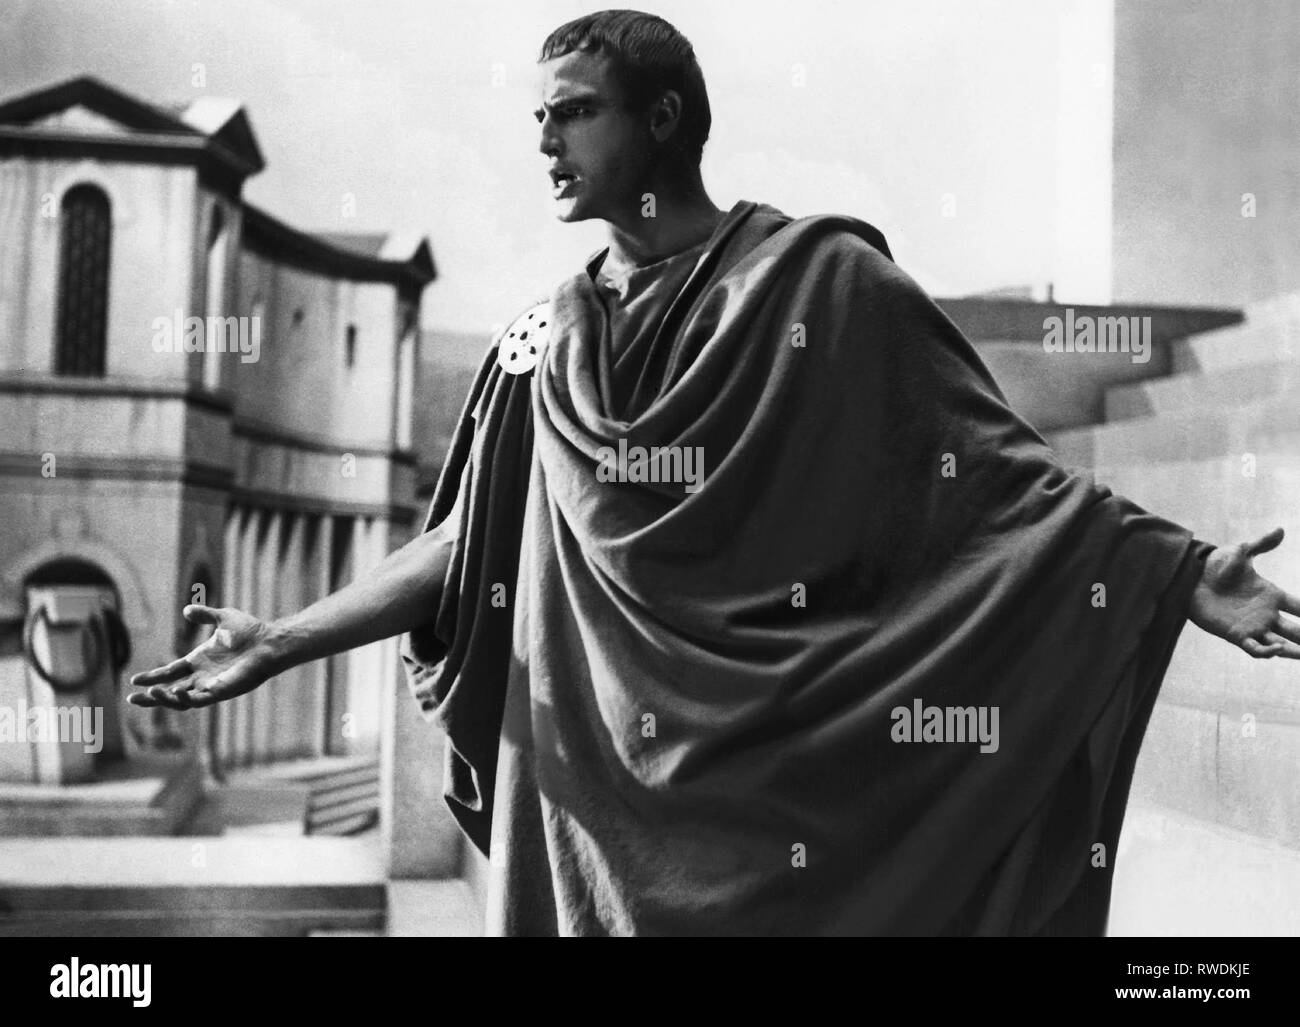 Julius caesar Black and White Stock Photos & Images - Alamy